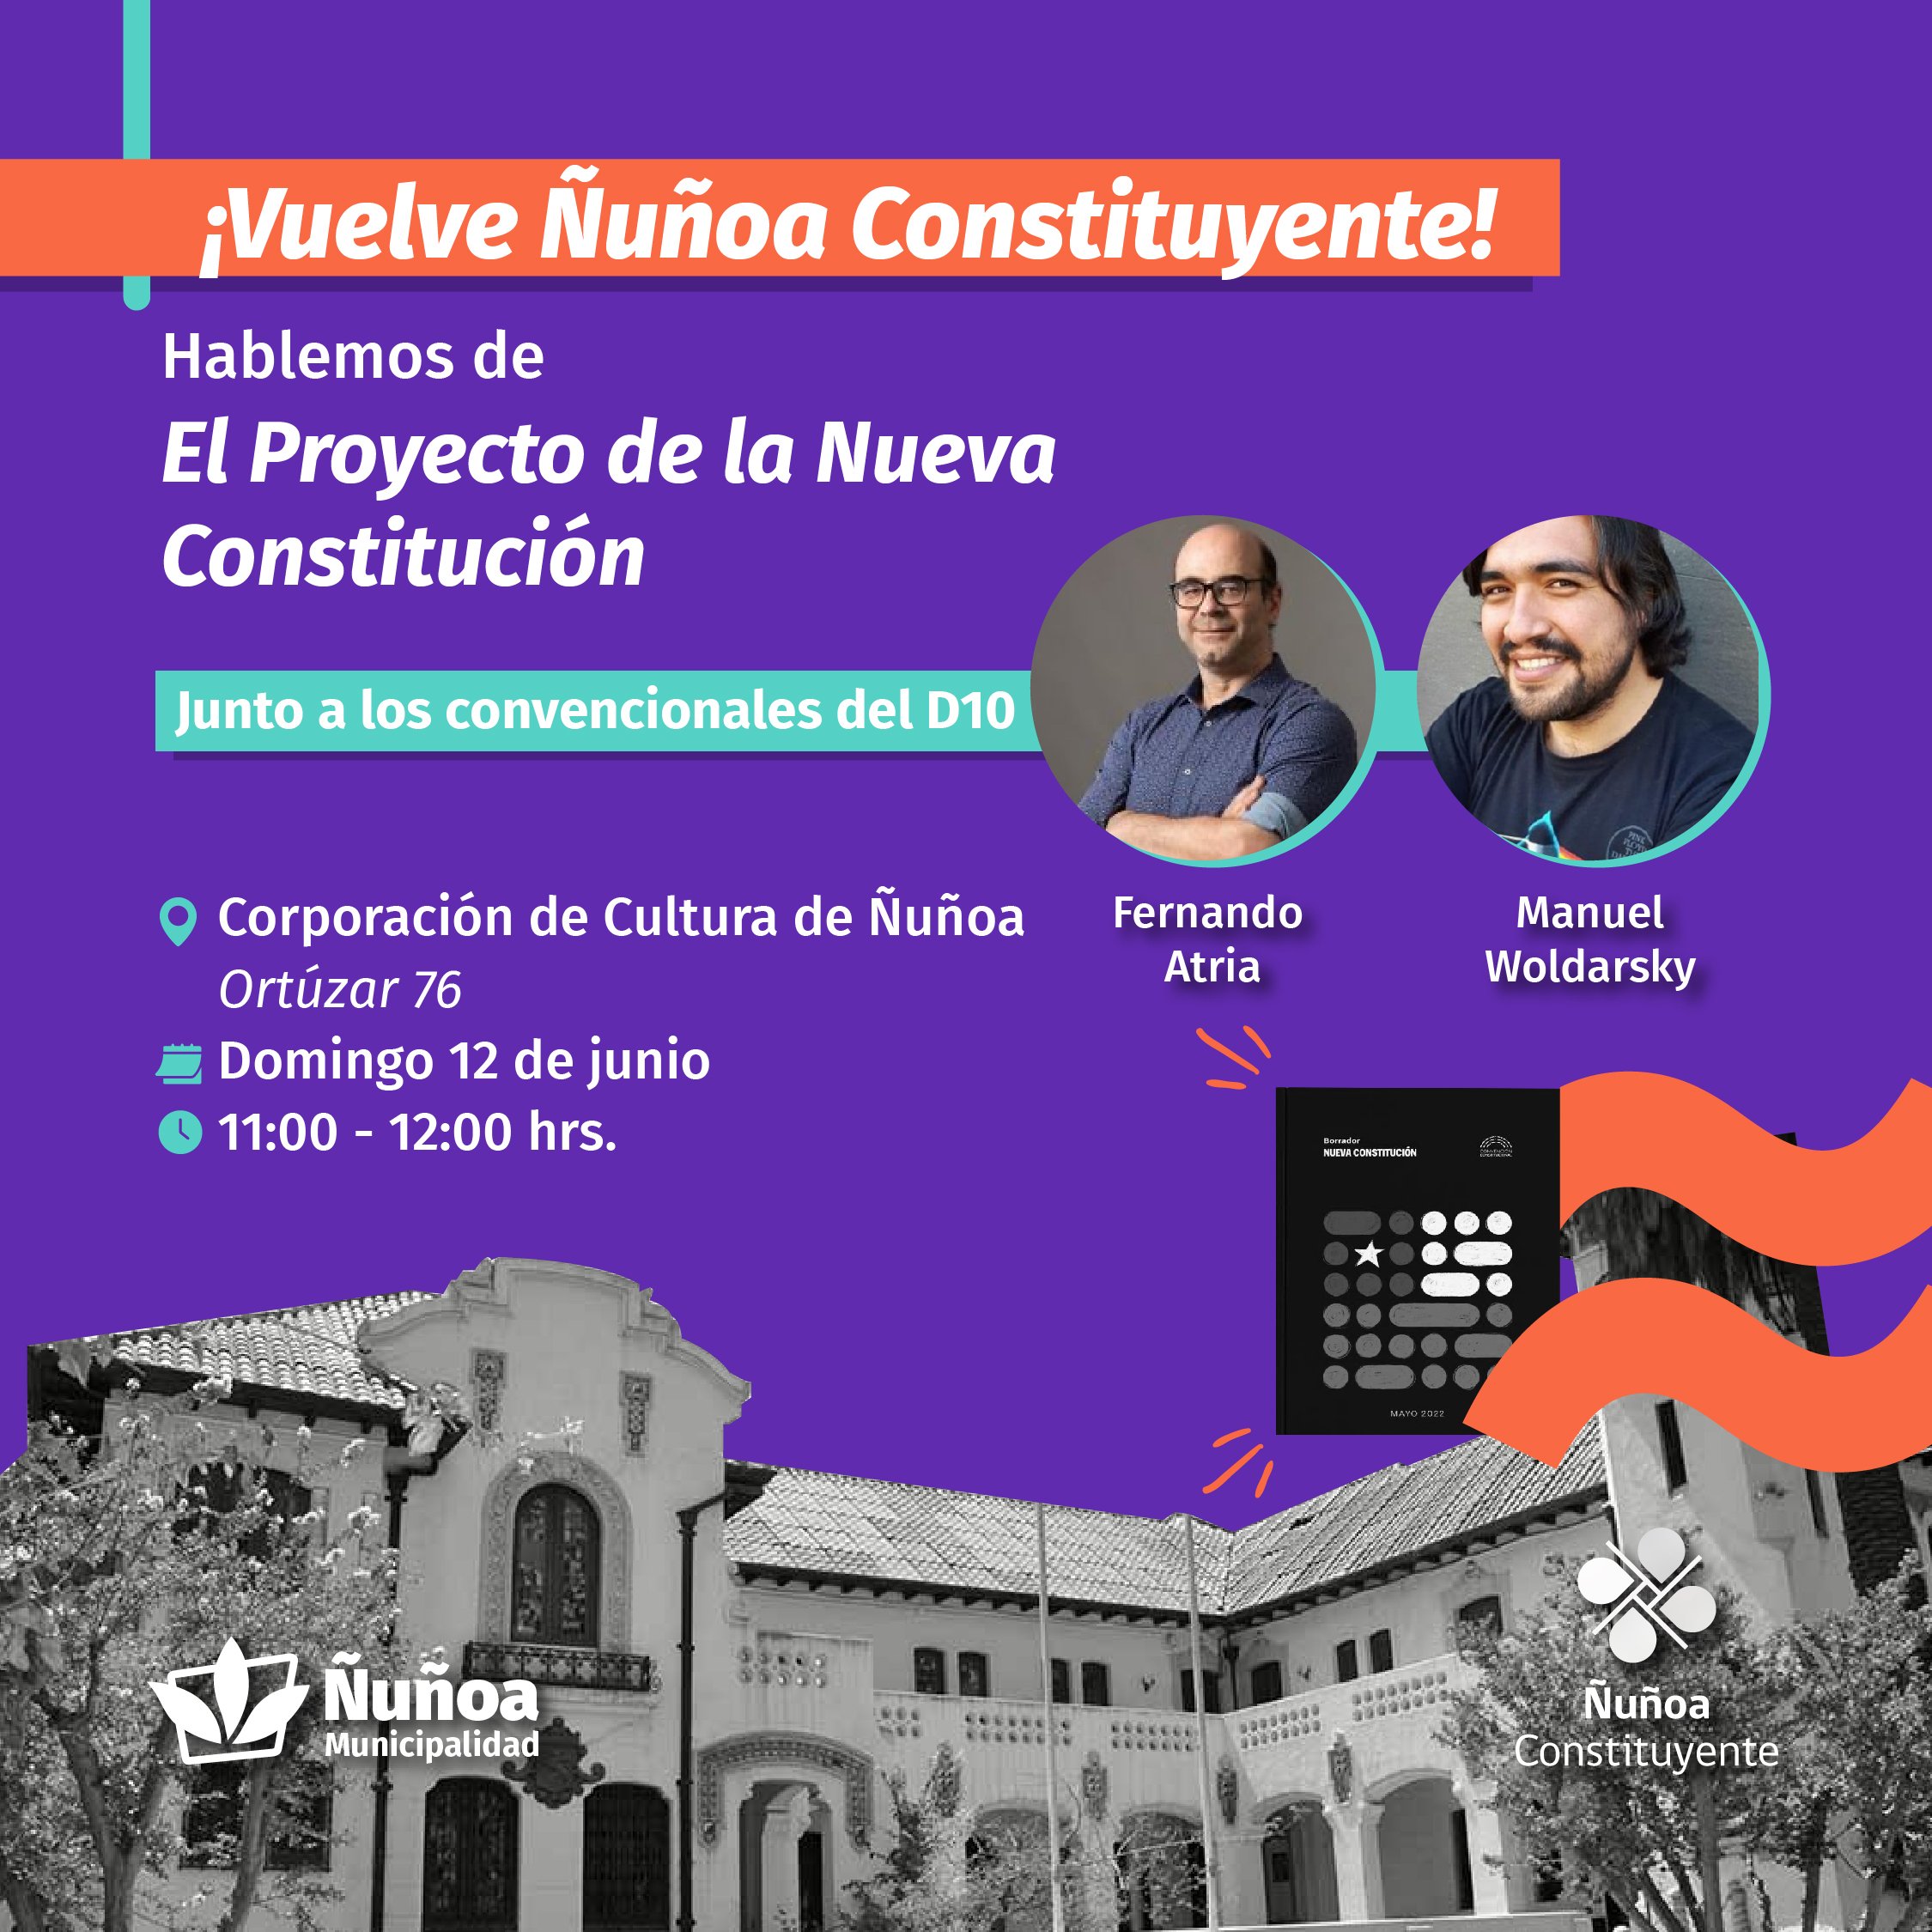 Municipalidad de Ñuñoa invita a “Hablemos del Proyecto de la Nueva Constitución”